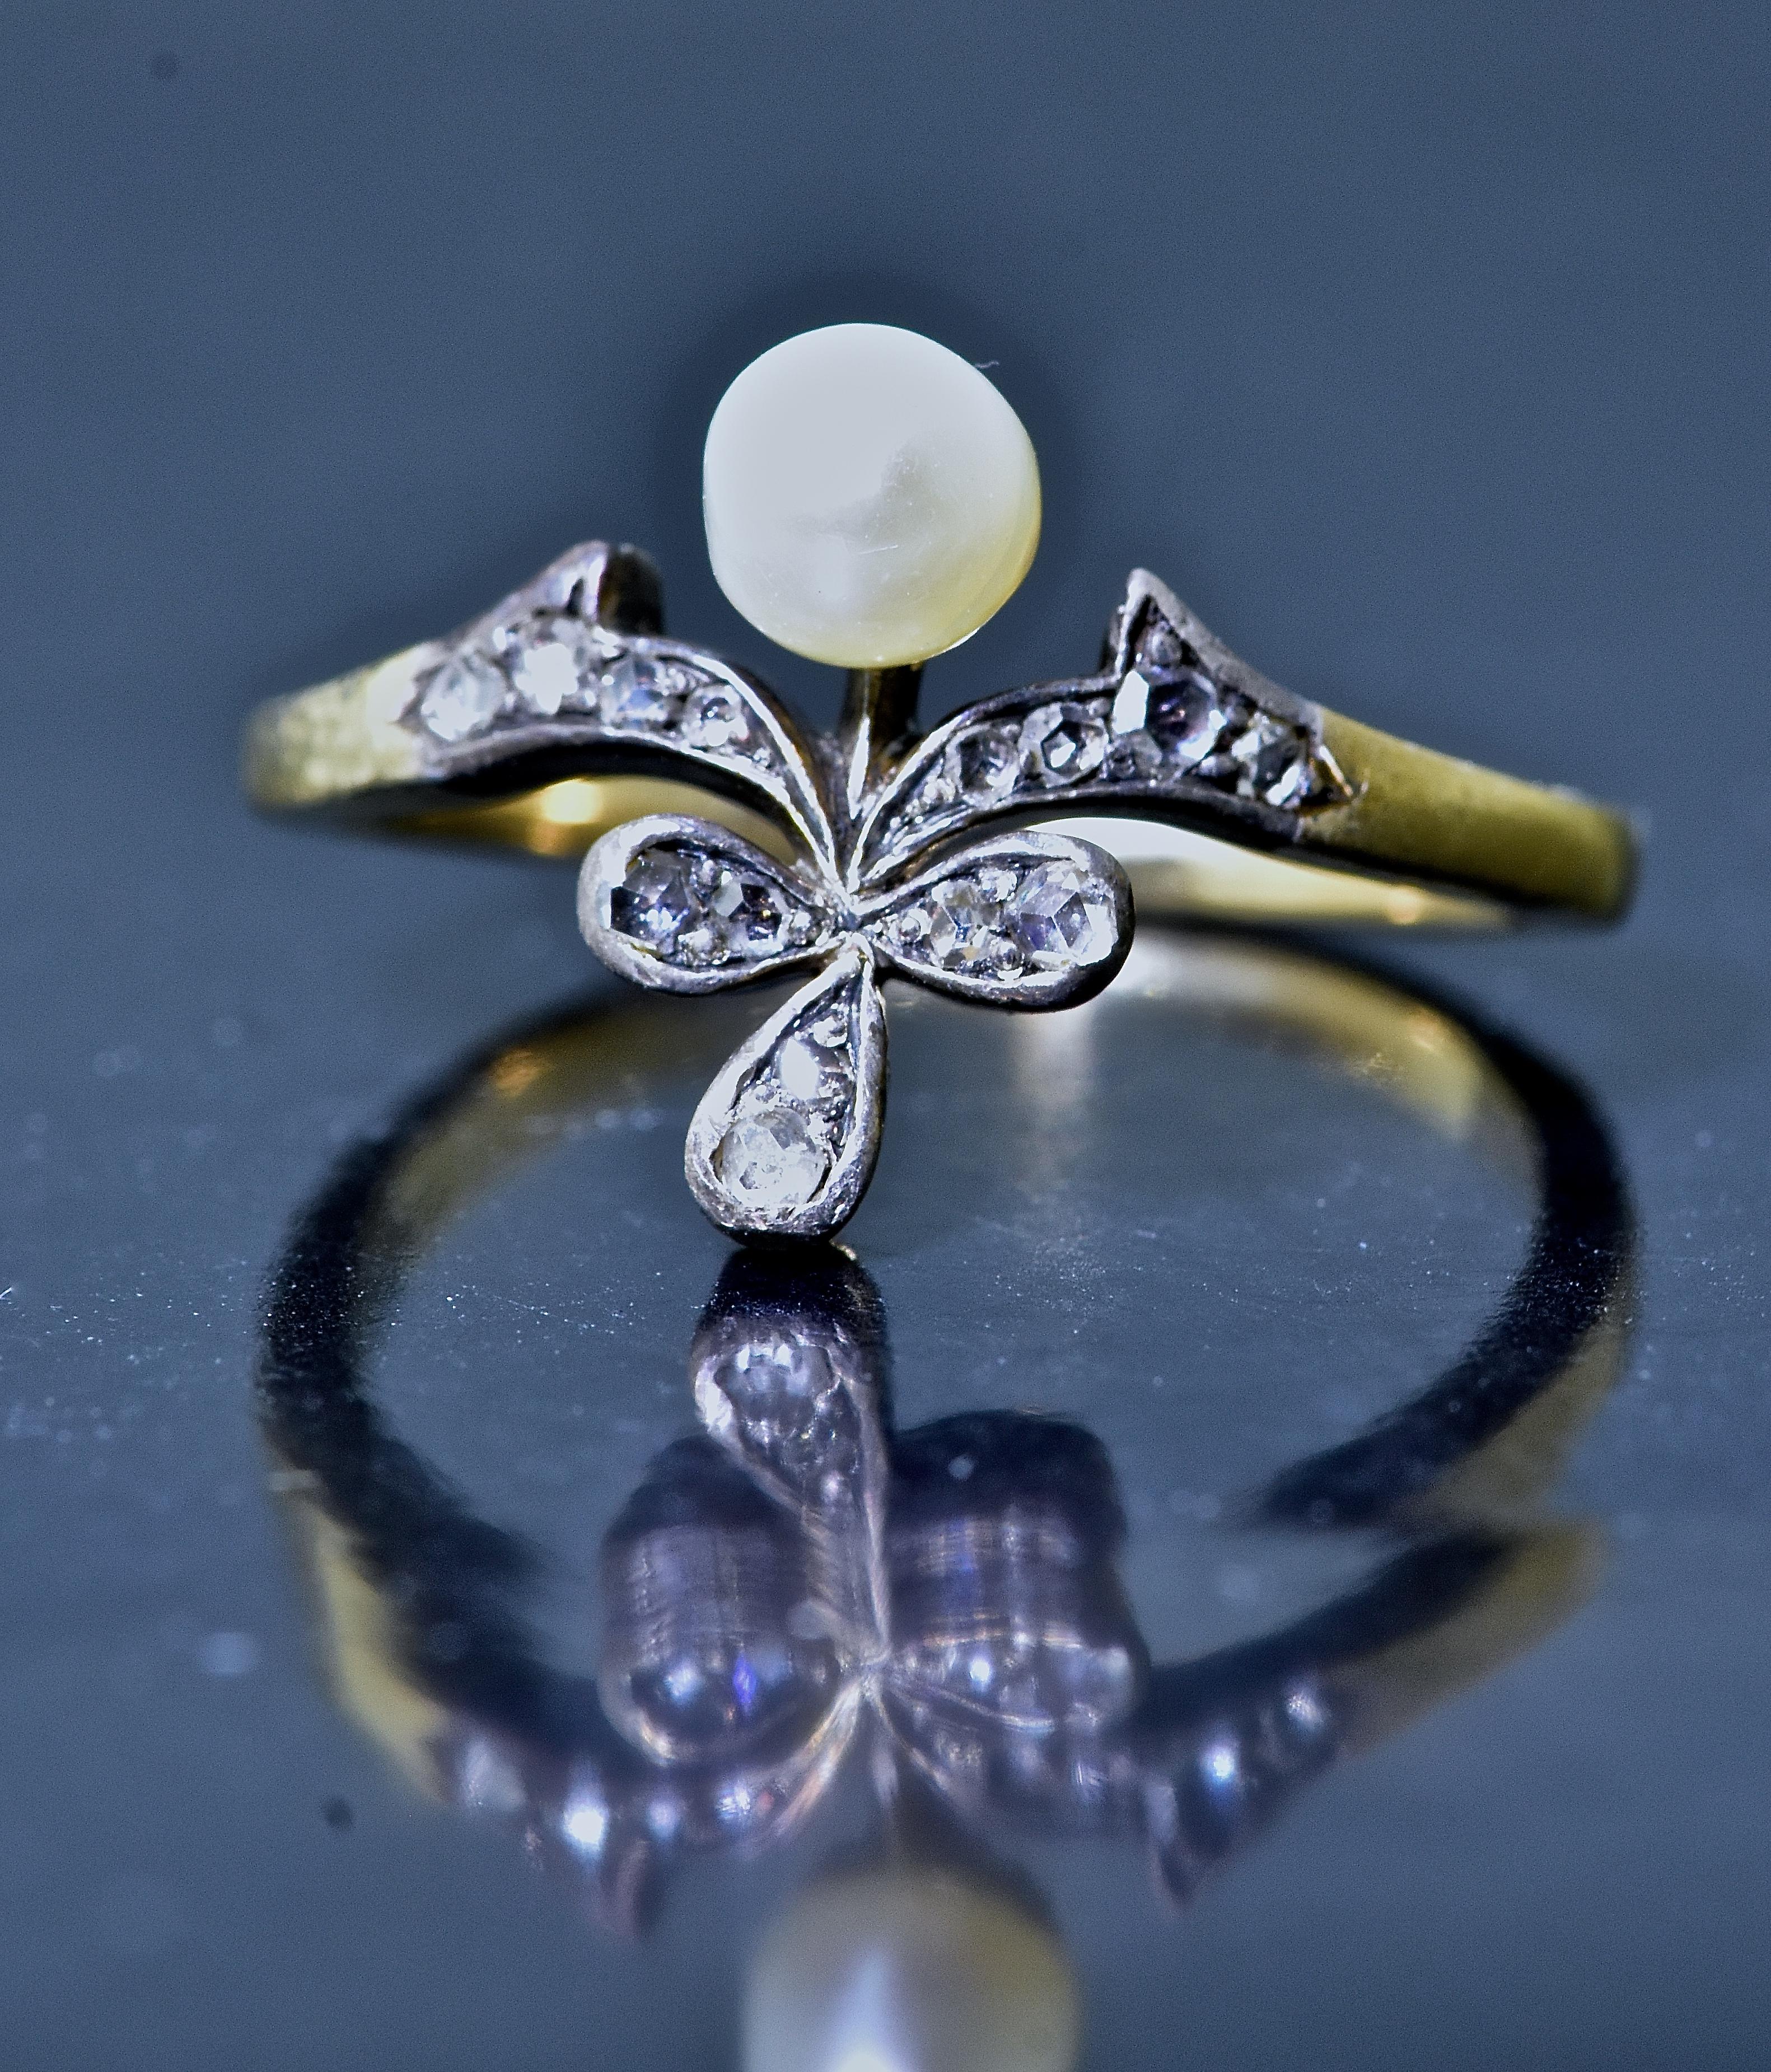 Antiker Ring aus 18K und Silber mit natürlicher Perle.  Die Perle misst 4,83 mm und ist naturbelassen,  im Gegensatz zu gezüchteten und sehr leicht unrunden.   Das Blumenmotiv ist mit 14 perlenbesetzten Diamanten im Rosenschliff (ungefähres